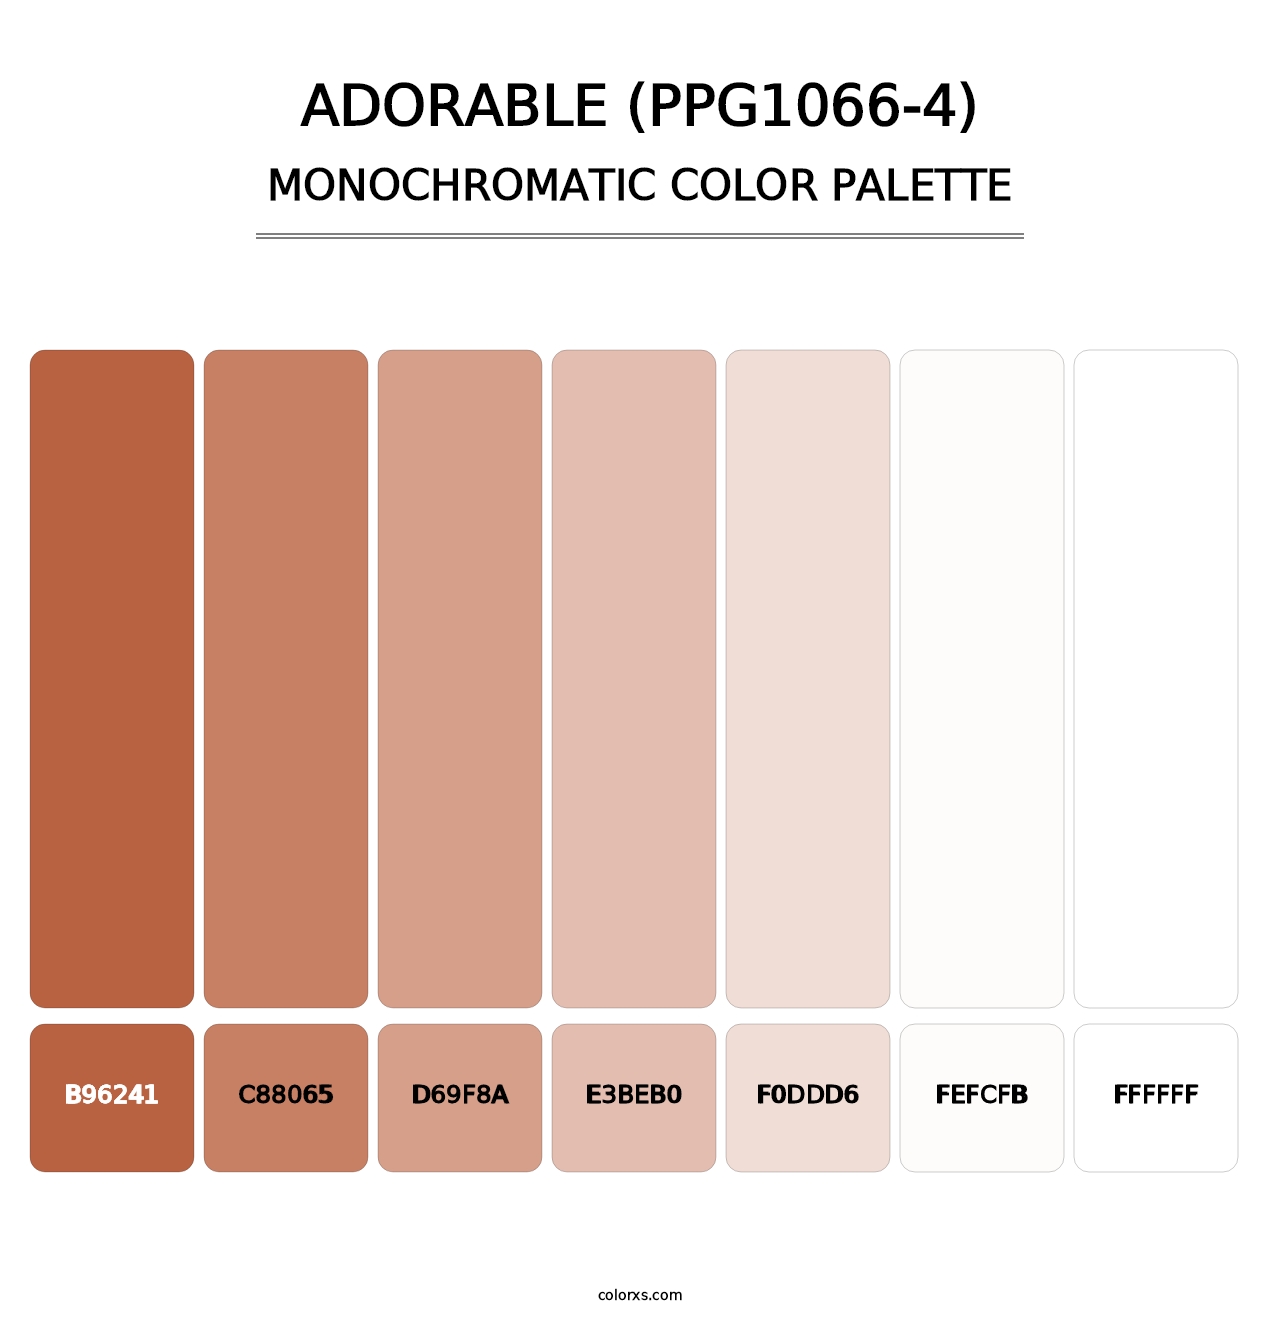 Adorable (PPG1066-4) - Monochromatic Color Palette